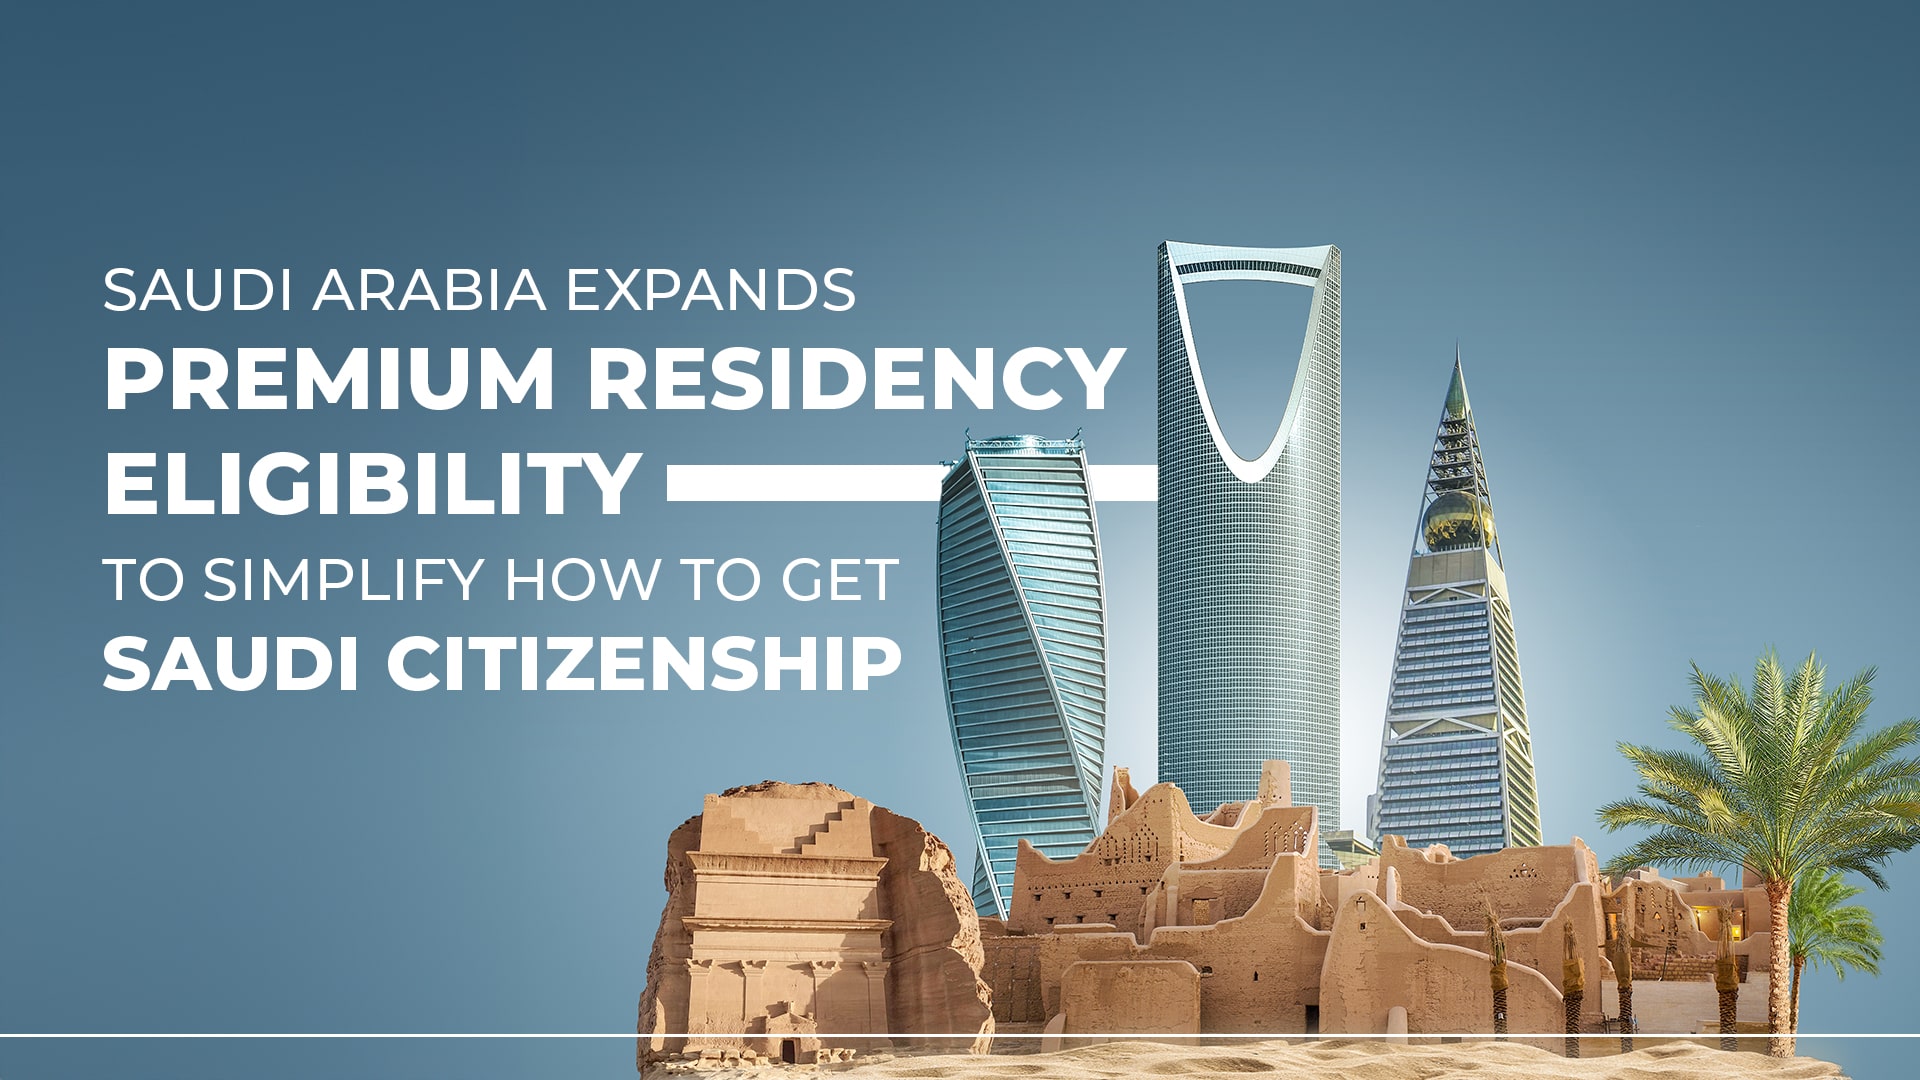 How to Get Saudi Citizenship